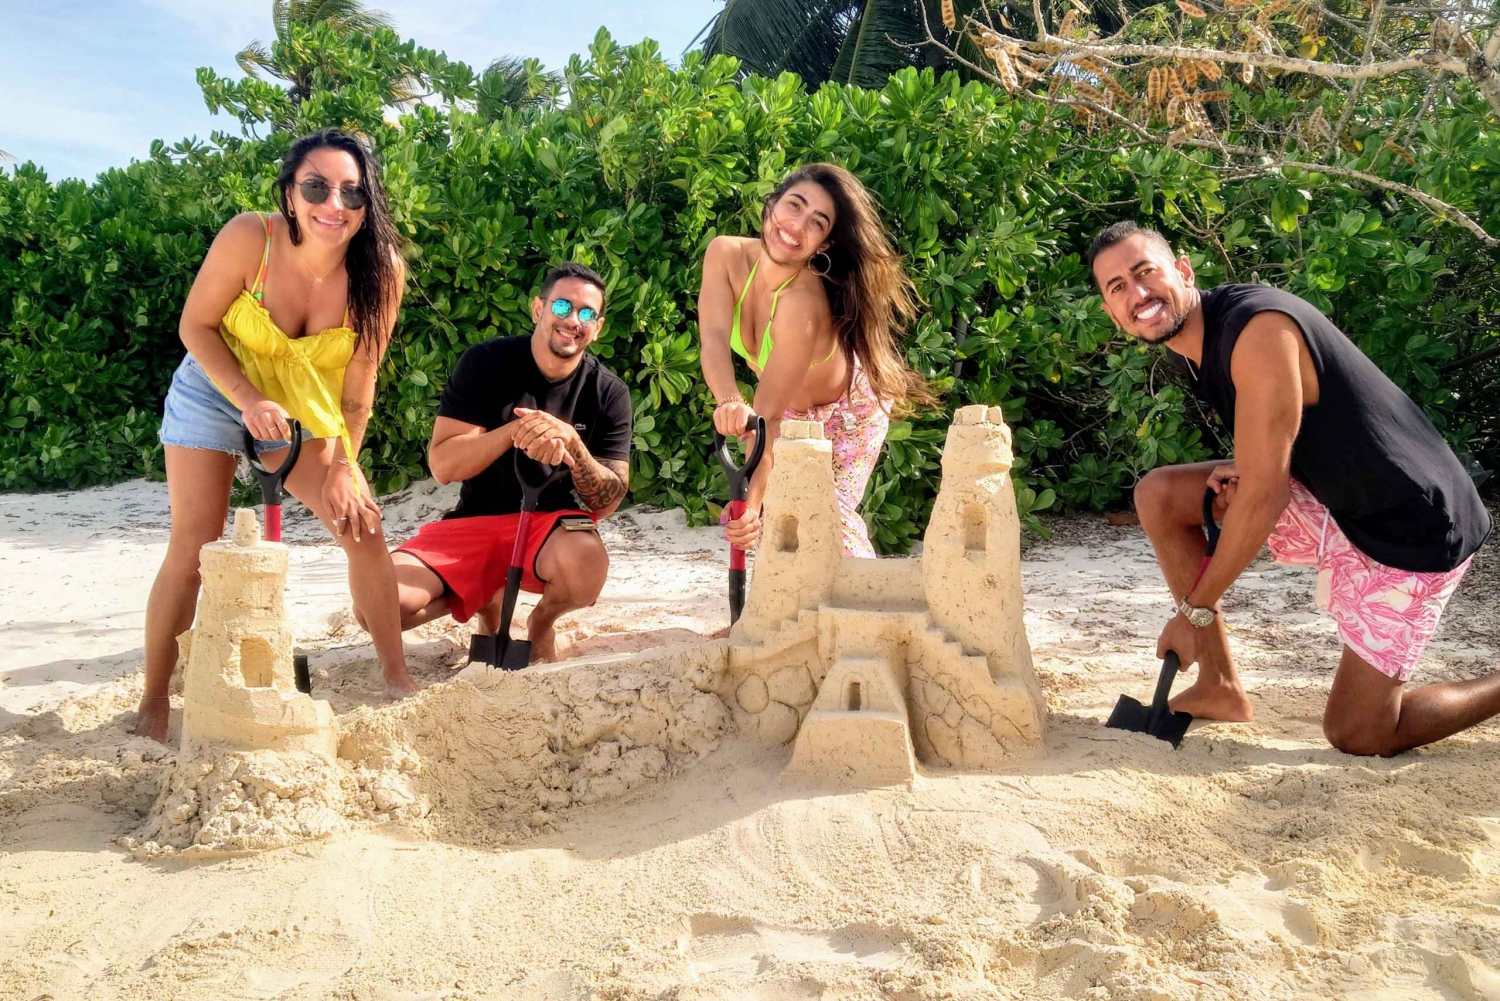 Nassau Bahamas: Attività in spiaggia per scolpire castelli di sabbia